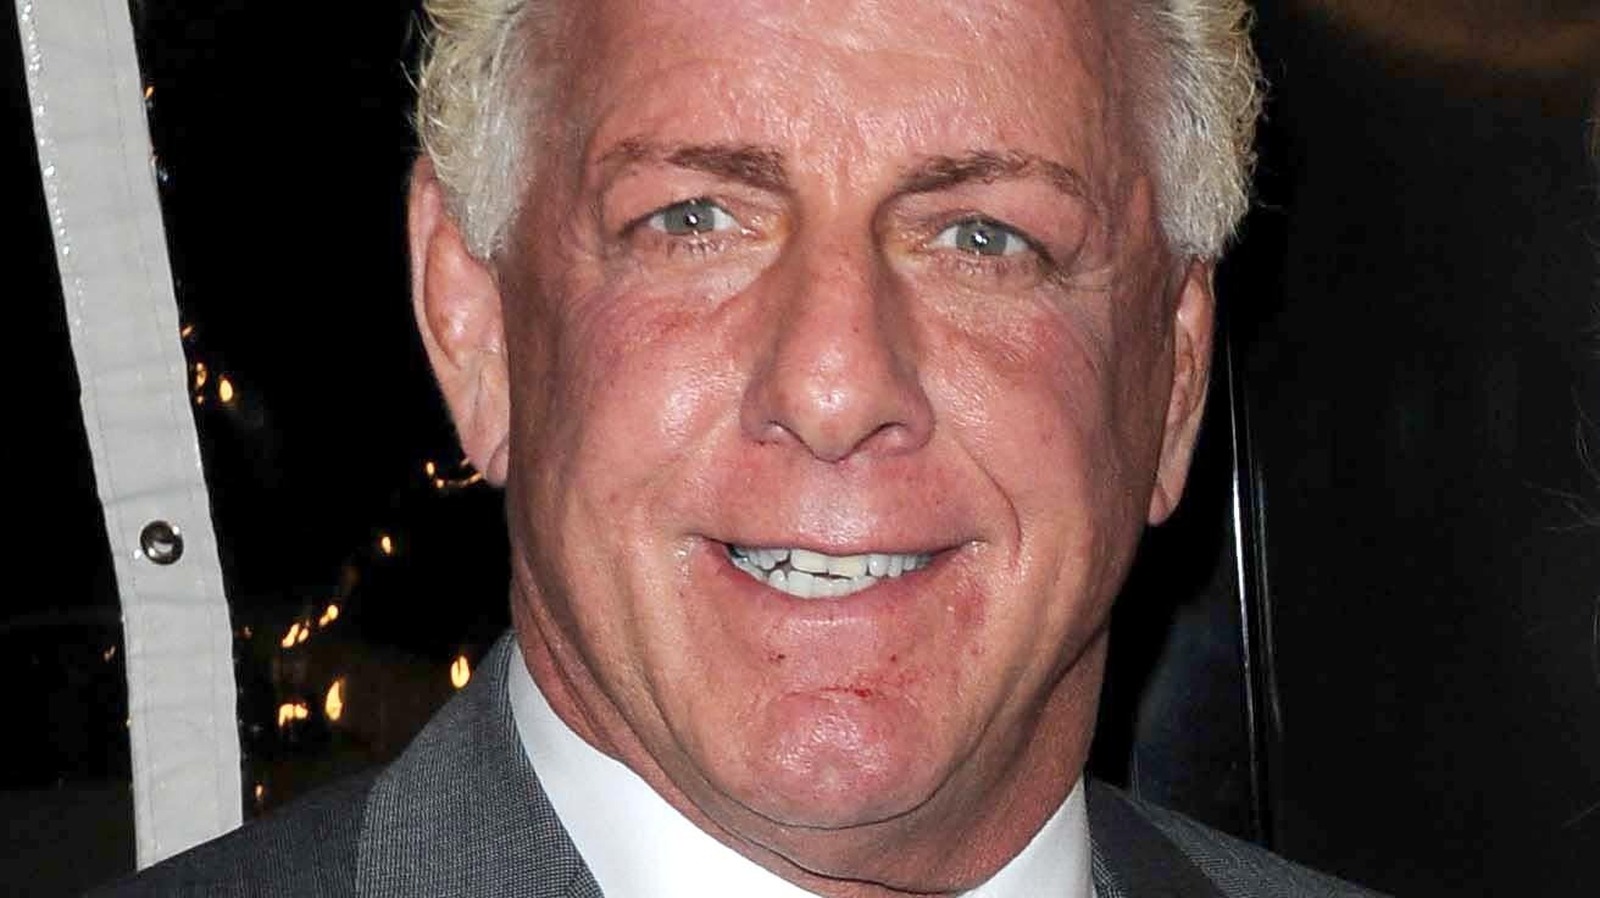 Ric Flair revelará el próximo miembro del Salón de la Fama de la WWE 2023 en el golpe